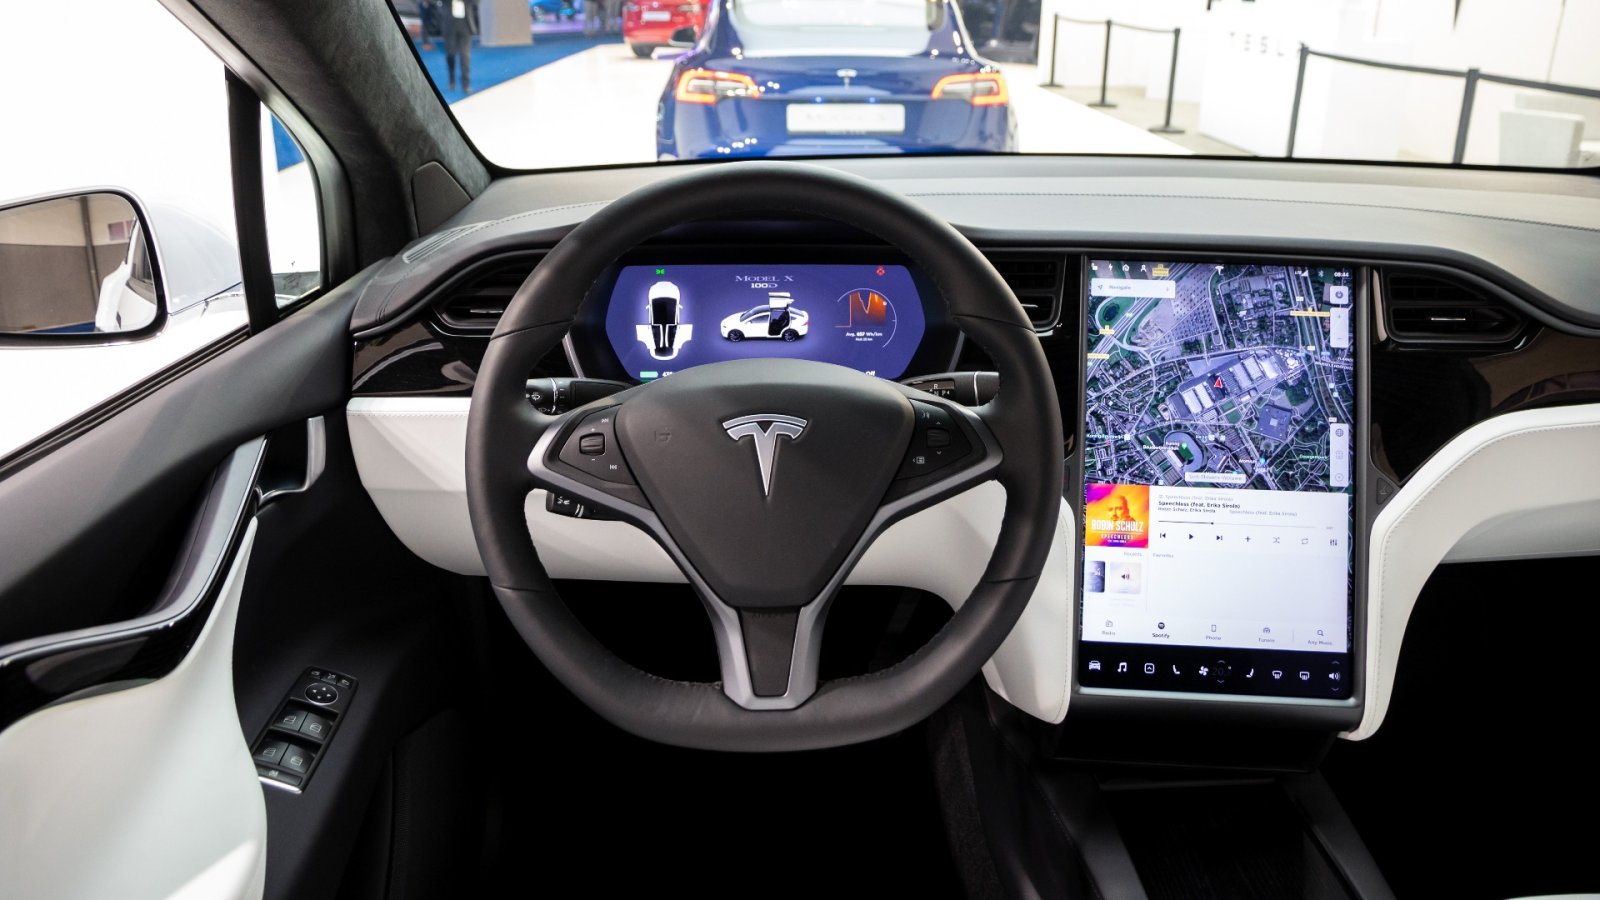 Quel est le problème avec les voitures Tesla et pourquoi le logiciel est-il considéré comme dangereux ?